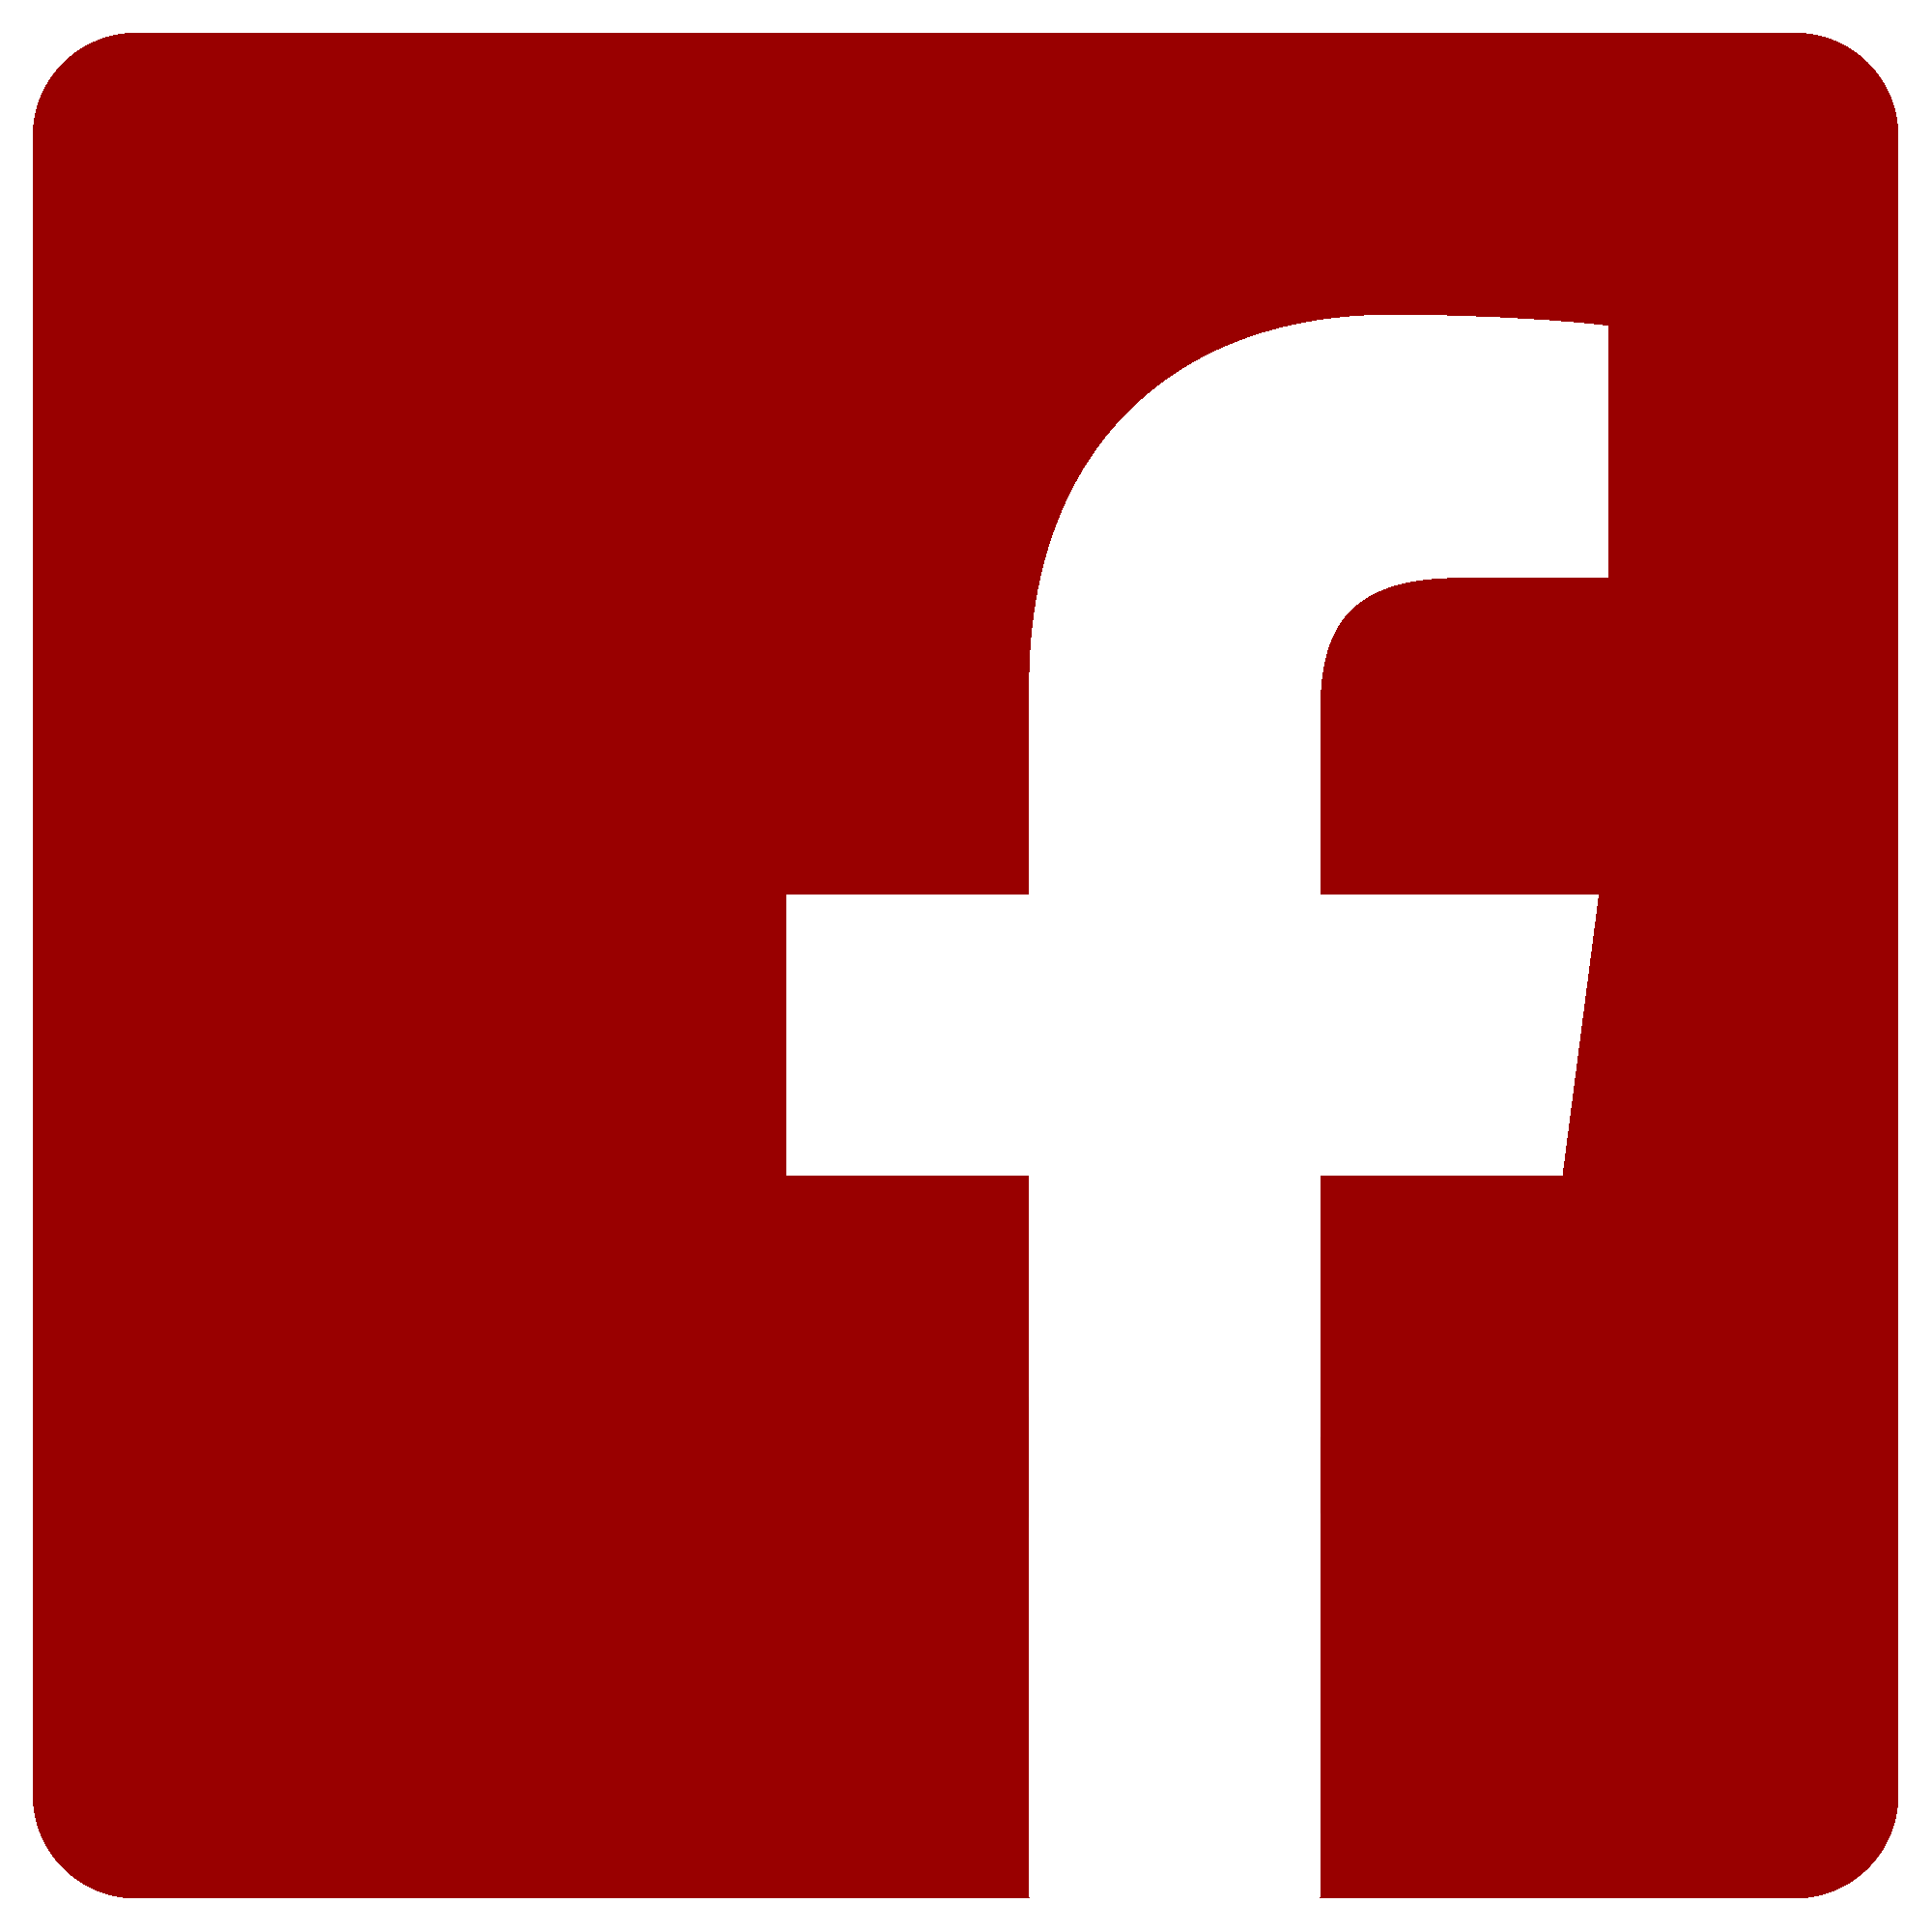 Facebook Logo Png Red